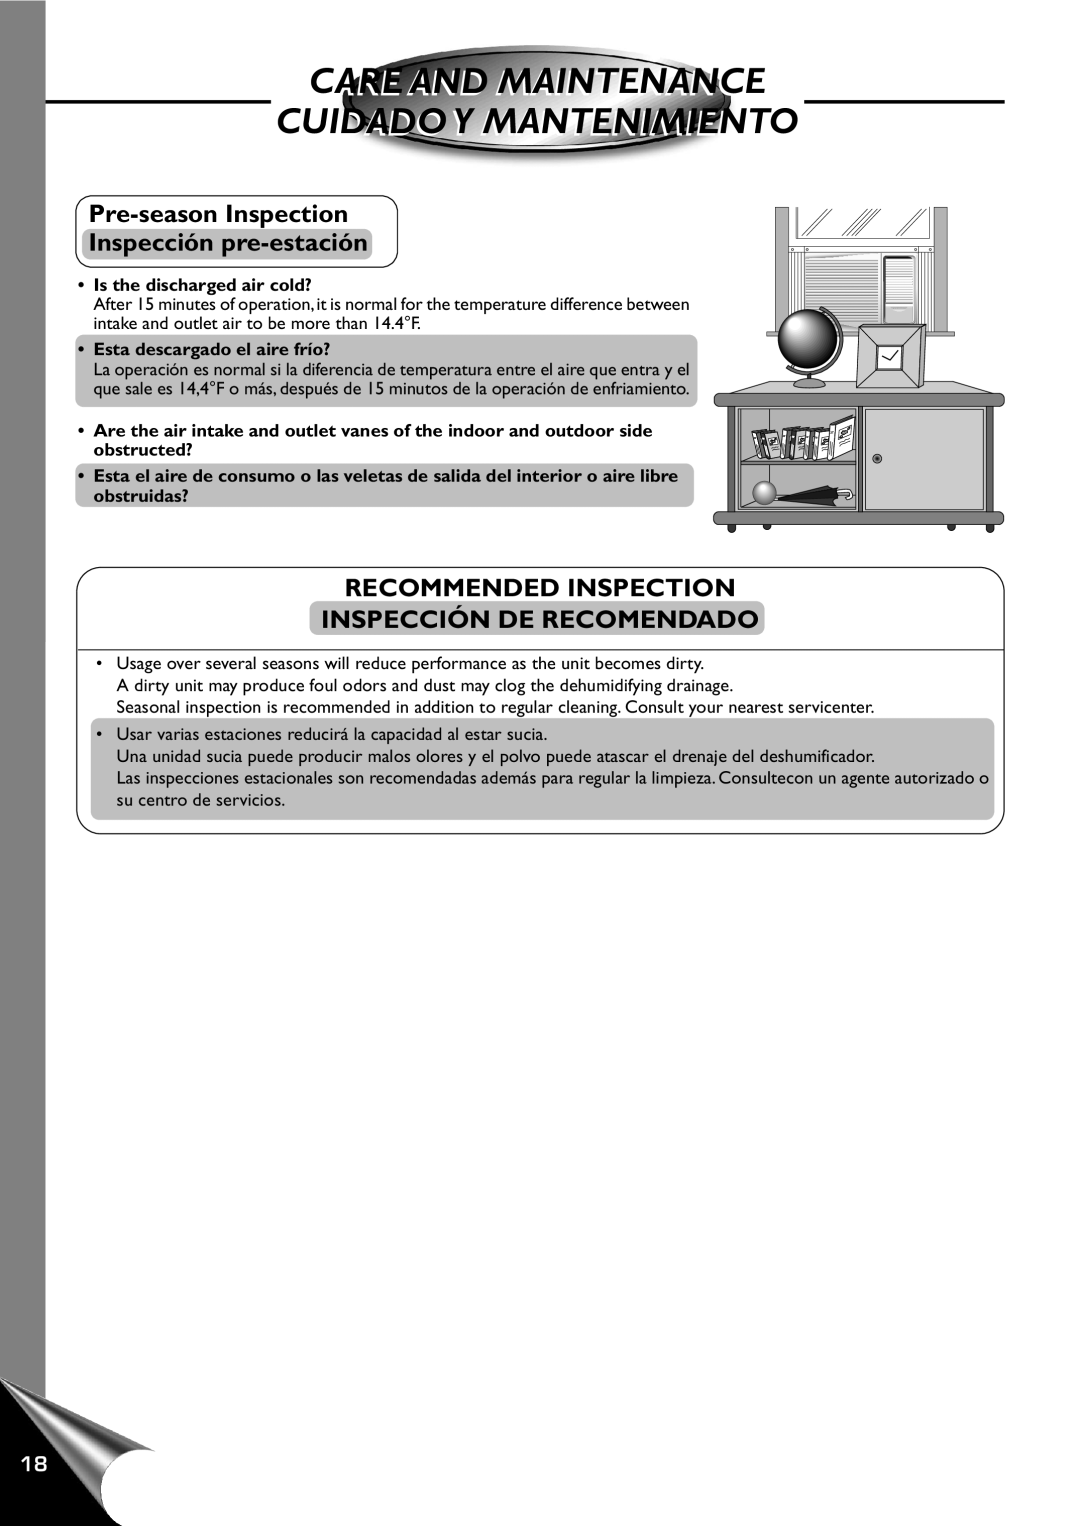 Panasonic CW-C120AU manual Pre-seasonInspection Inspección pre-estación, Recommended Inspection Inspección De Recomendado 